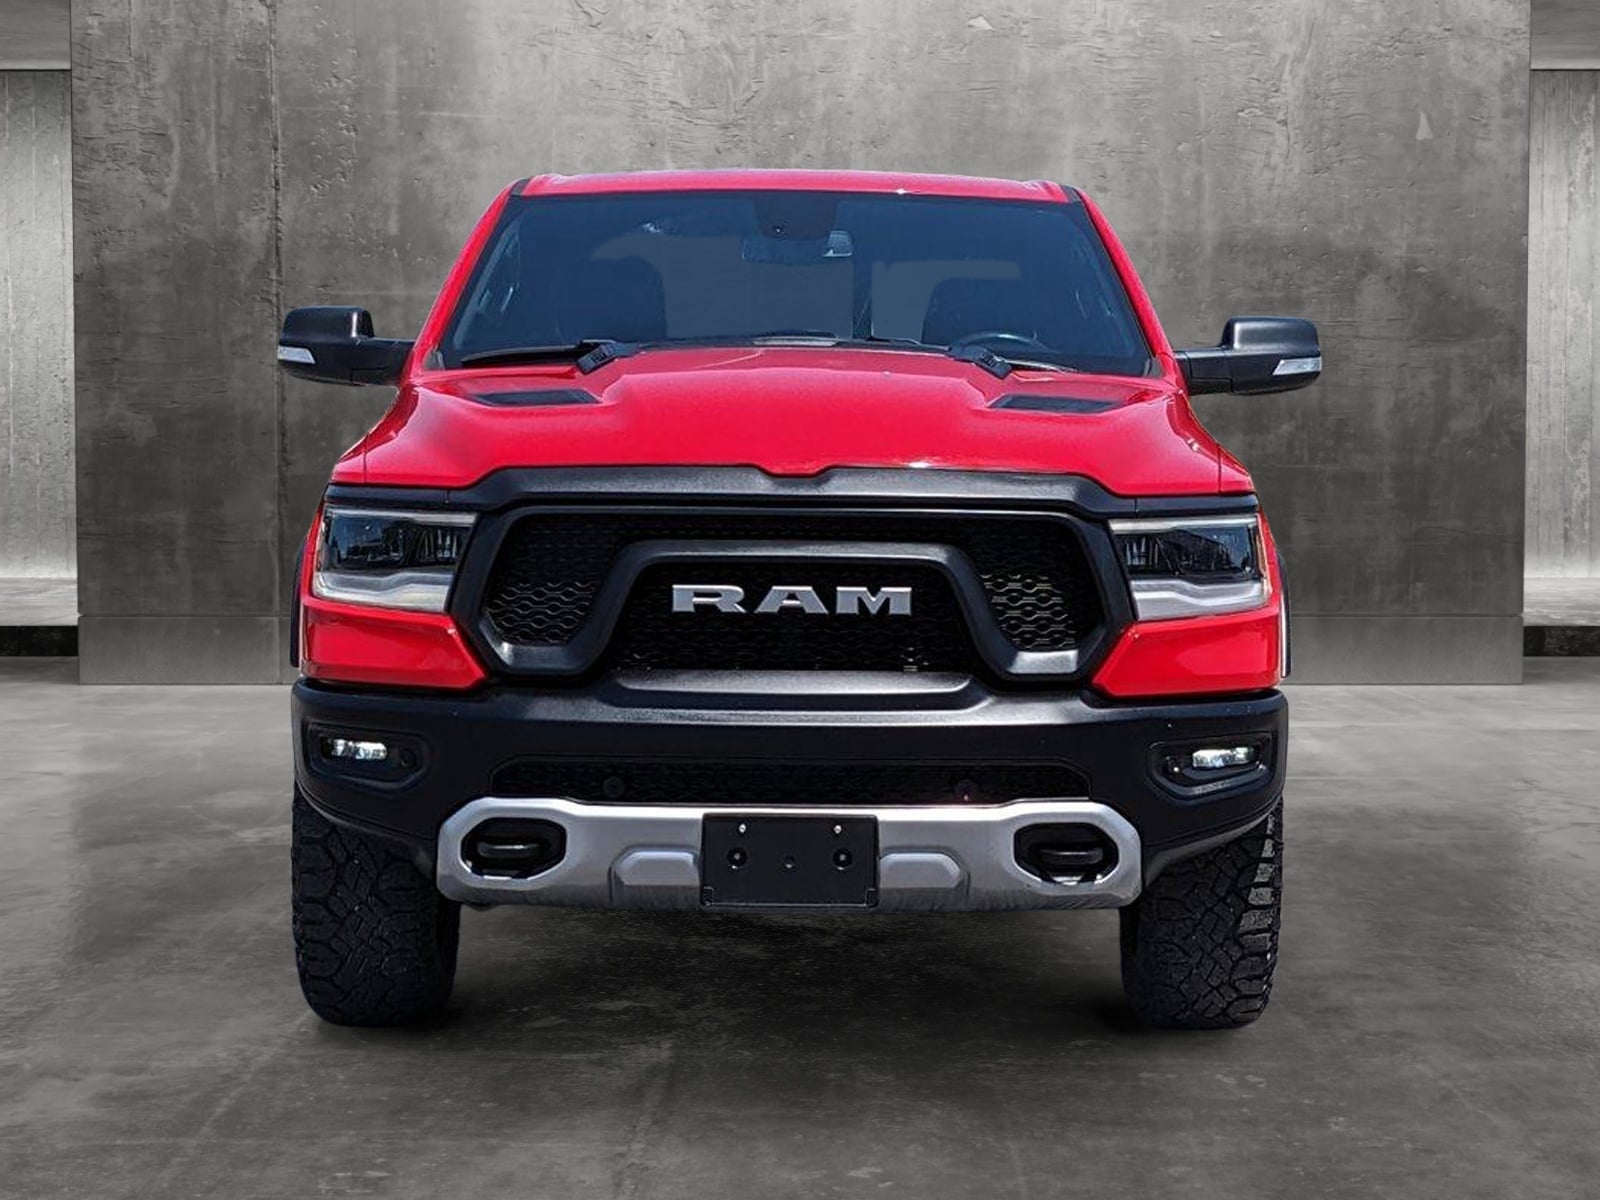 Used 2019 RAM Ram 1500 Pickup Rebel with VIN 1C6SRFLT6KN586594 for sale in Spokane, WA